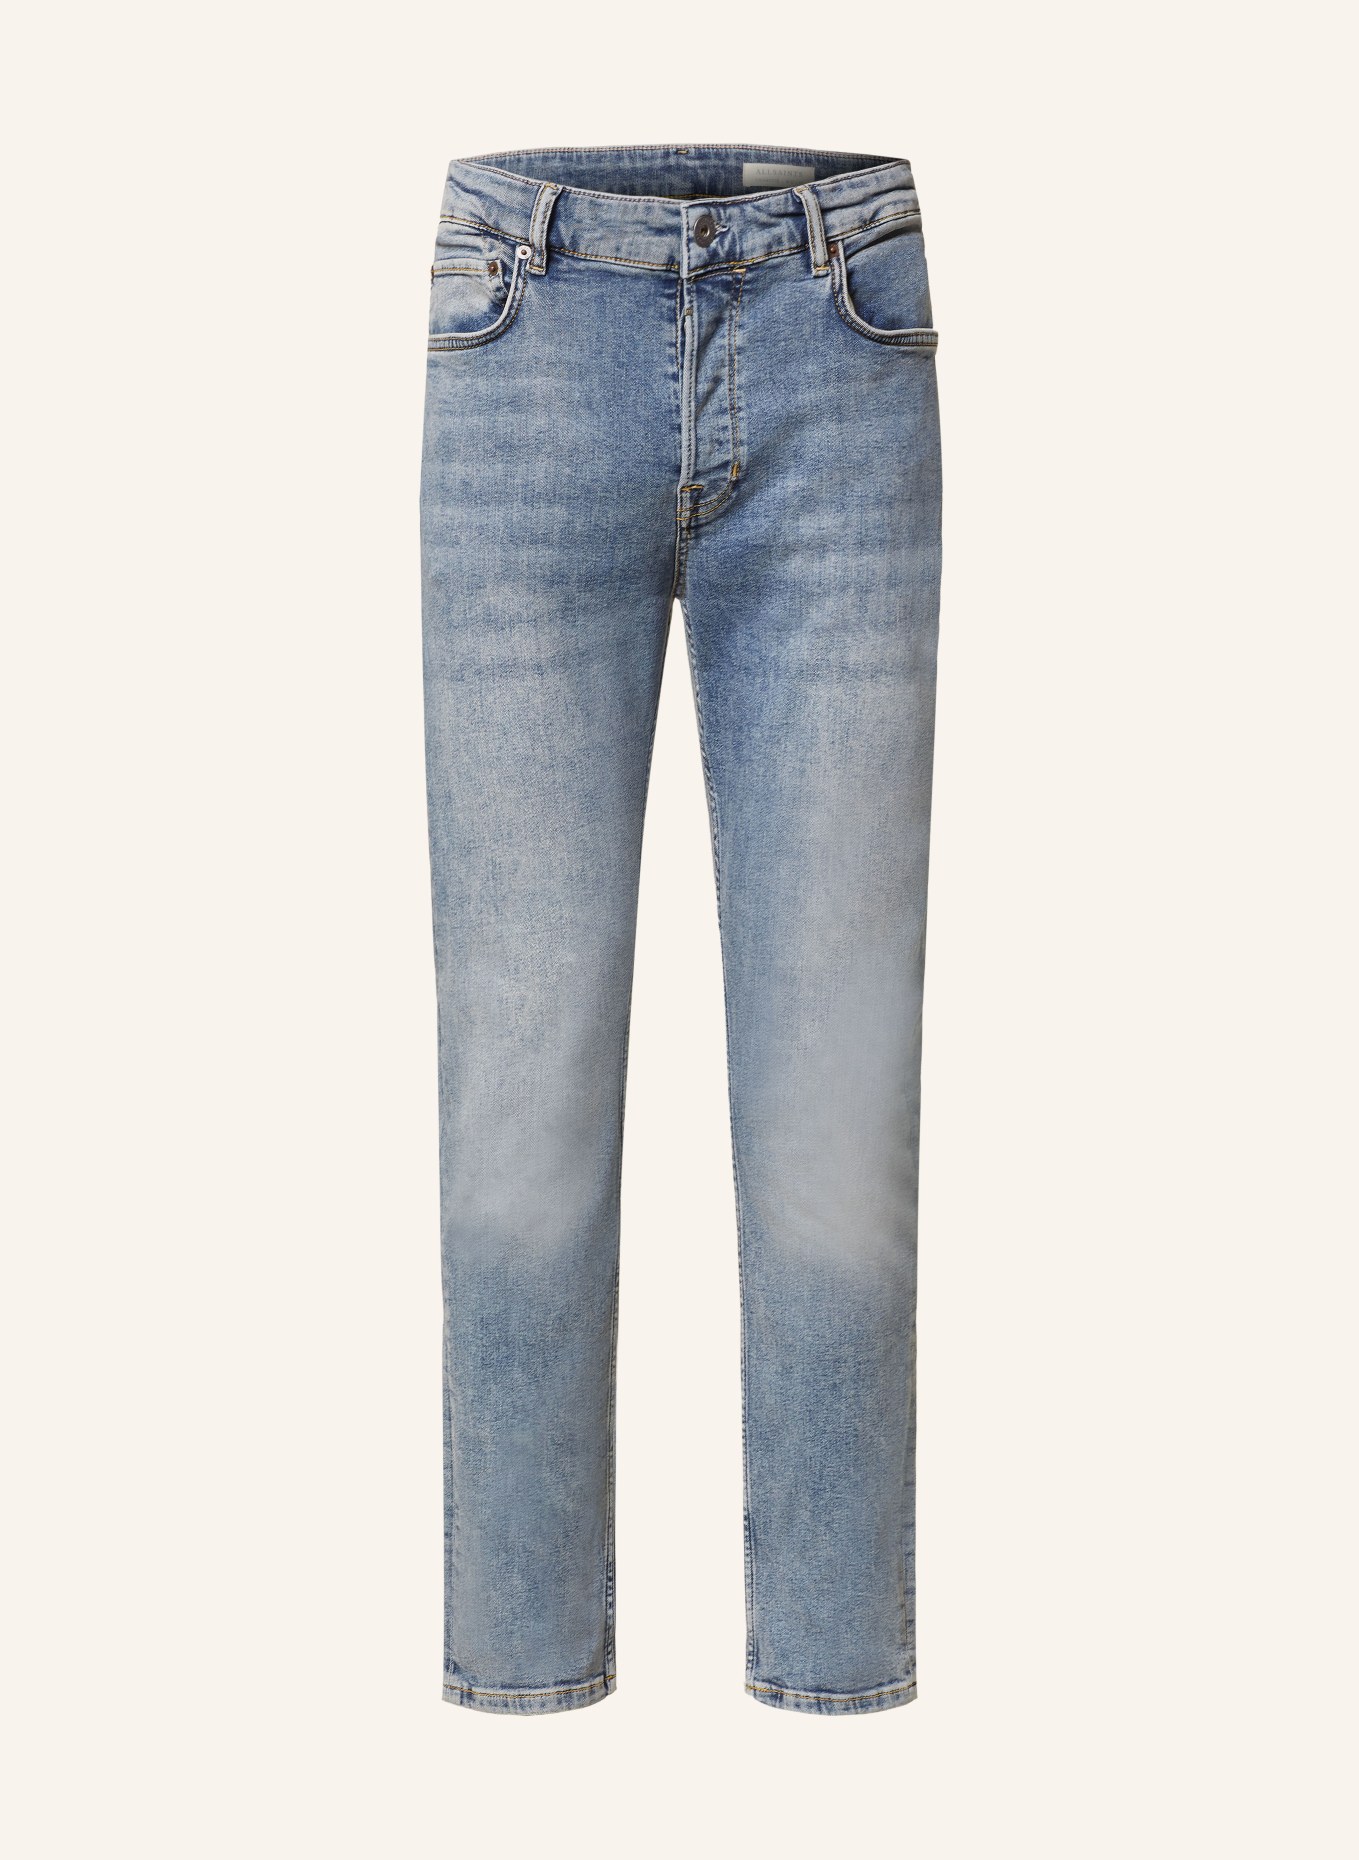 ALLSAINTS Skinny jeans CIGARETTE slim fit, Color: 2824 Indigo Blue (Image 1)